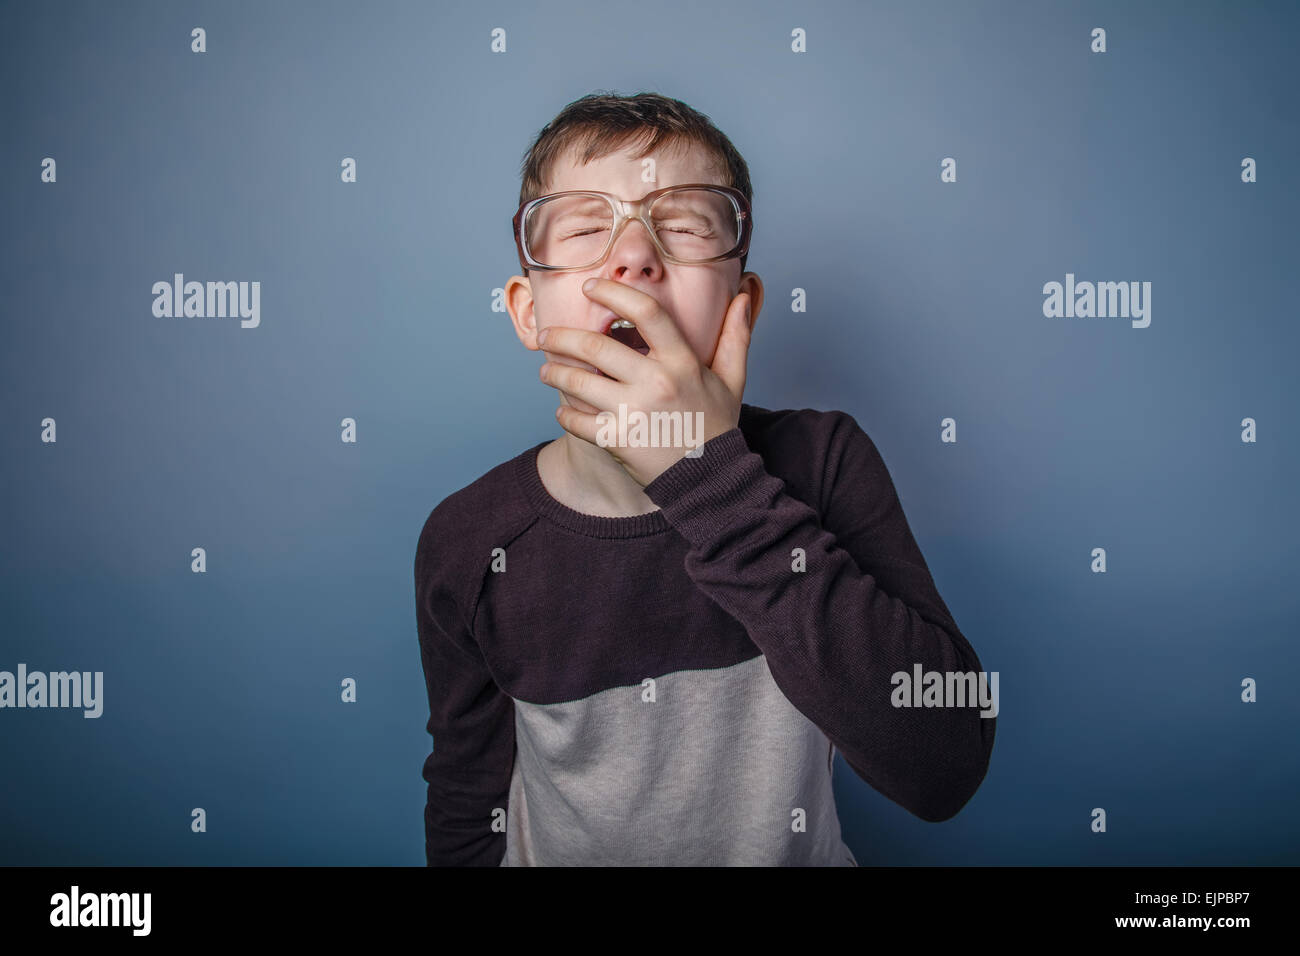 Ragazzo adolescente di aspetto europeo con gli occhiali si copre la mout Foto Stock